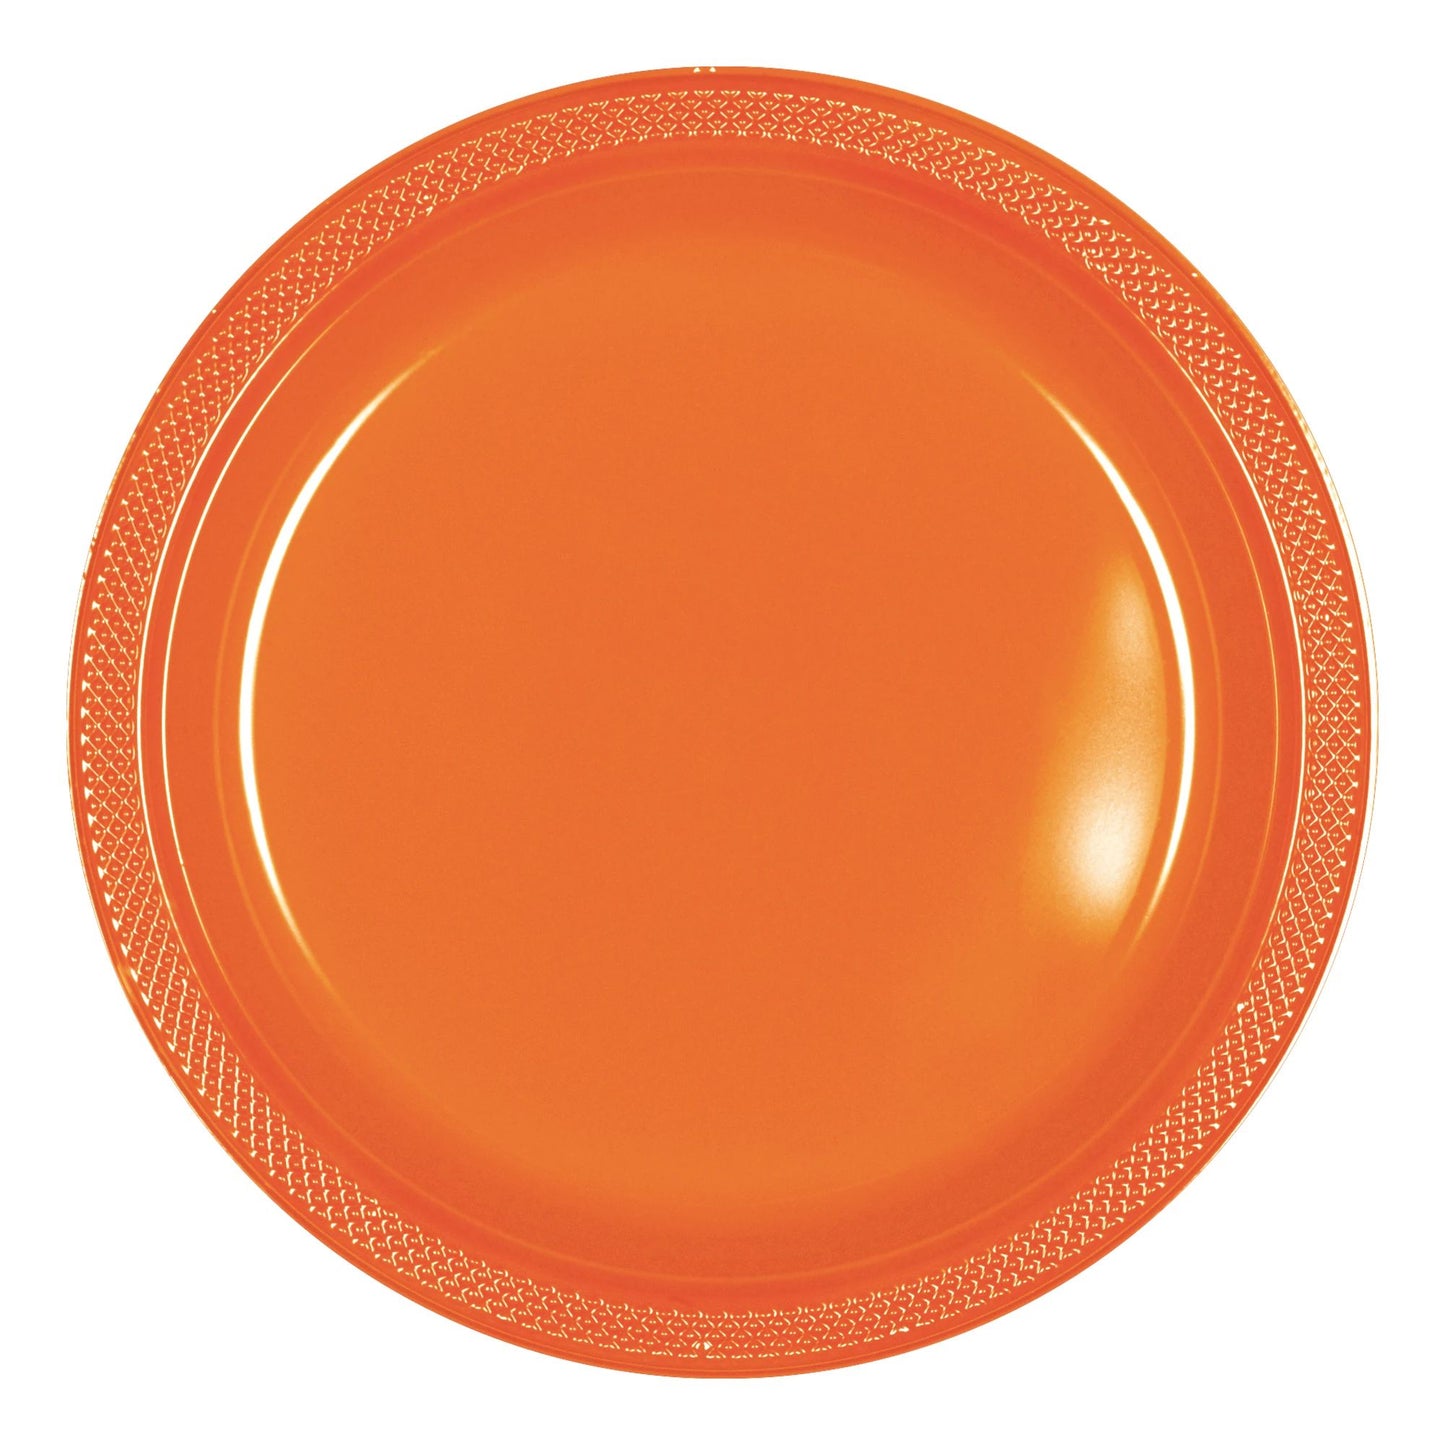 7" Plastic Plates (20ct.):